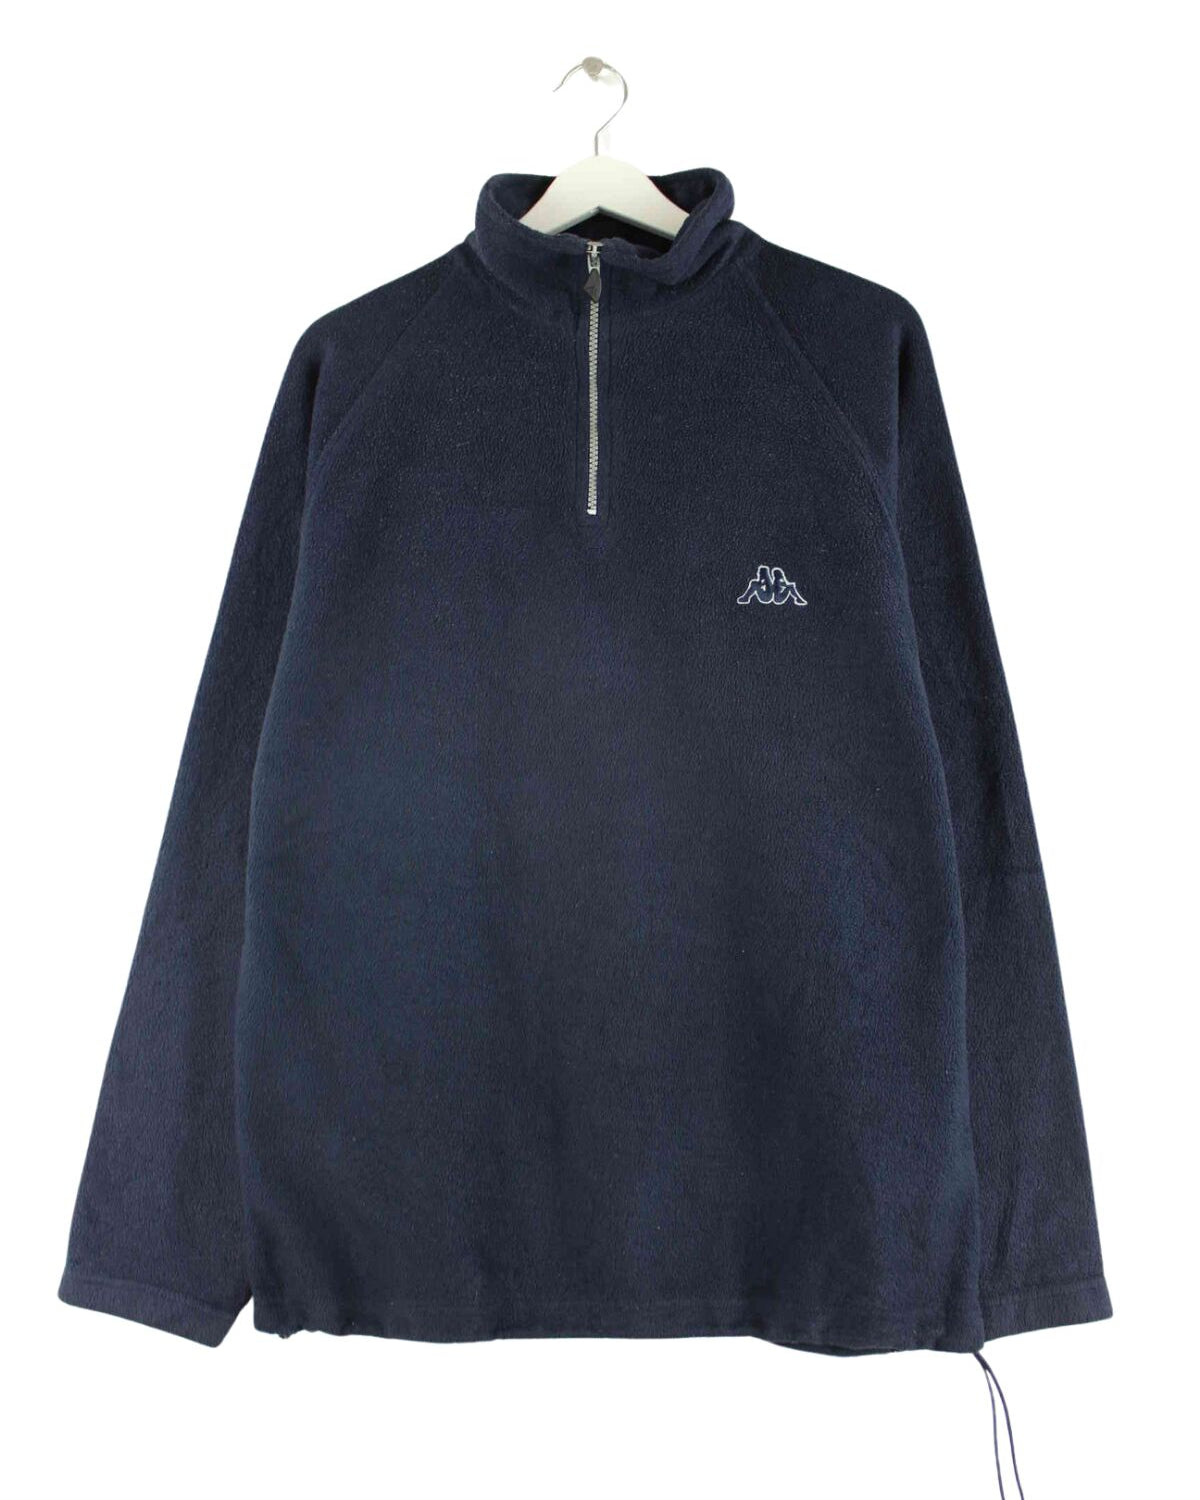 Kappa Half Zip Fleece Sweater Blau M (front image)